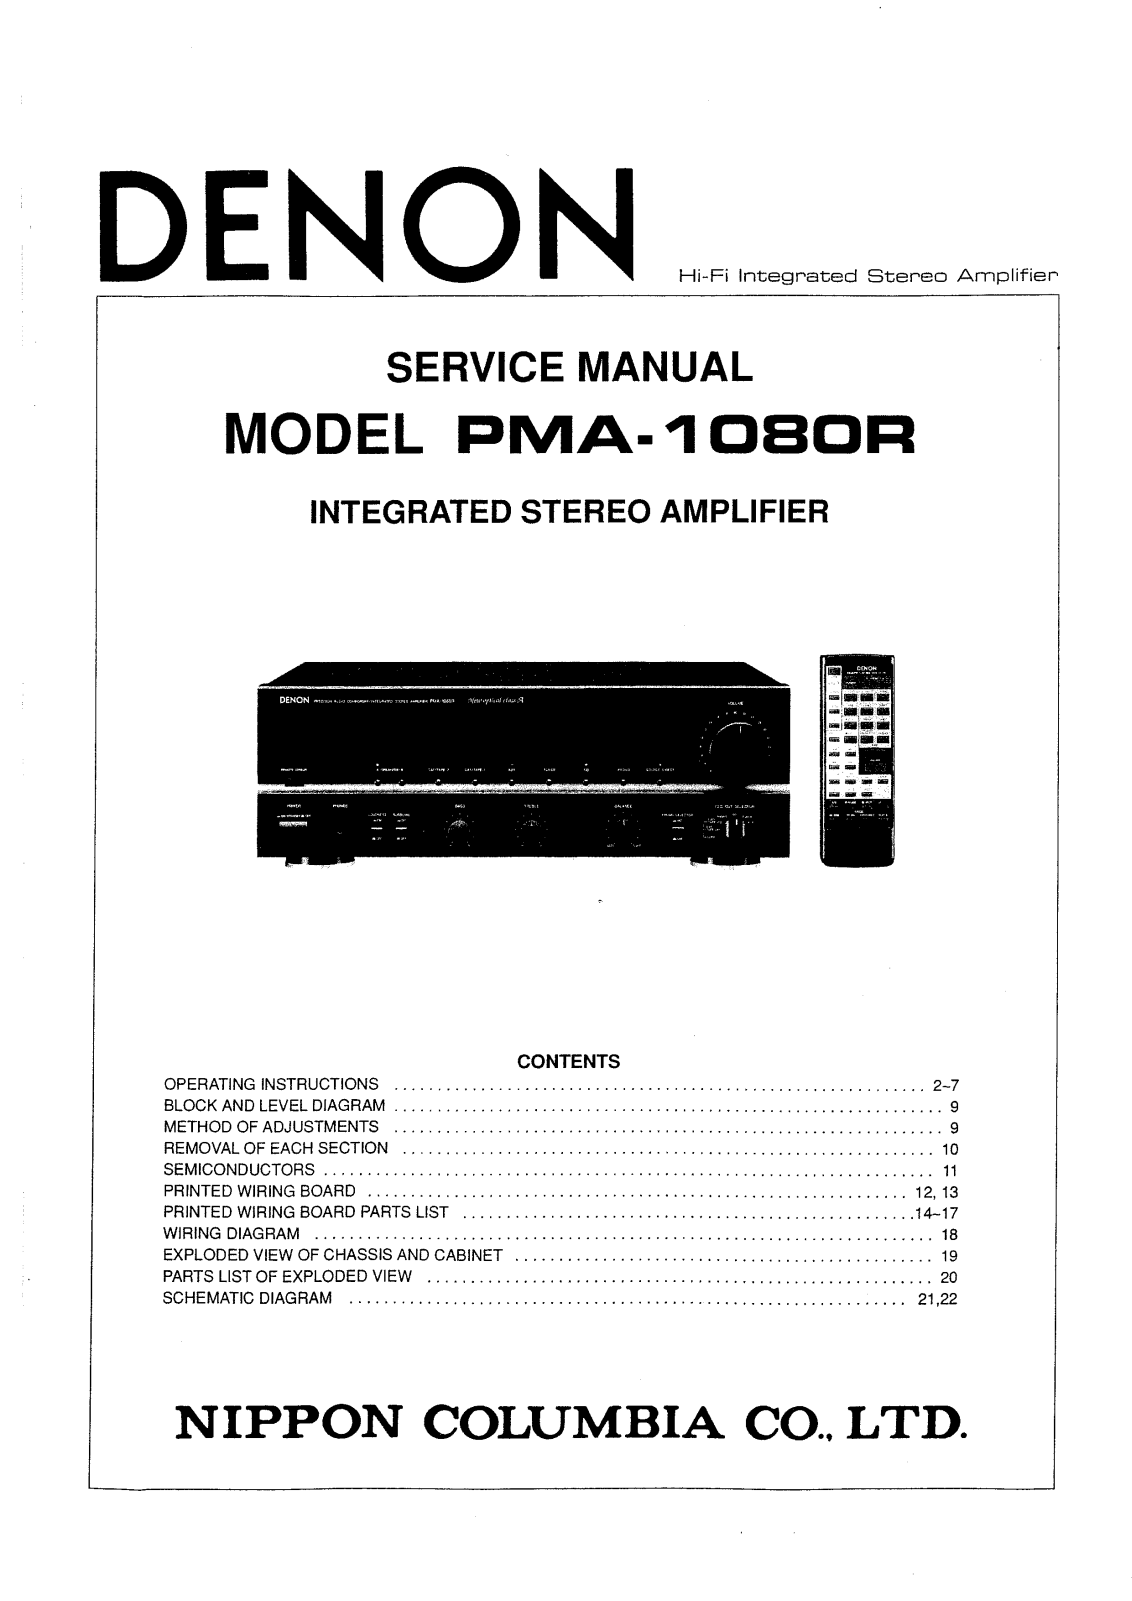 Denon PMA-1080R Service Manual